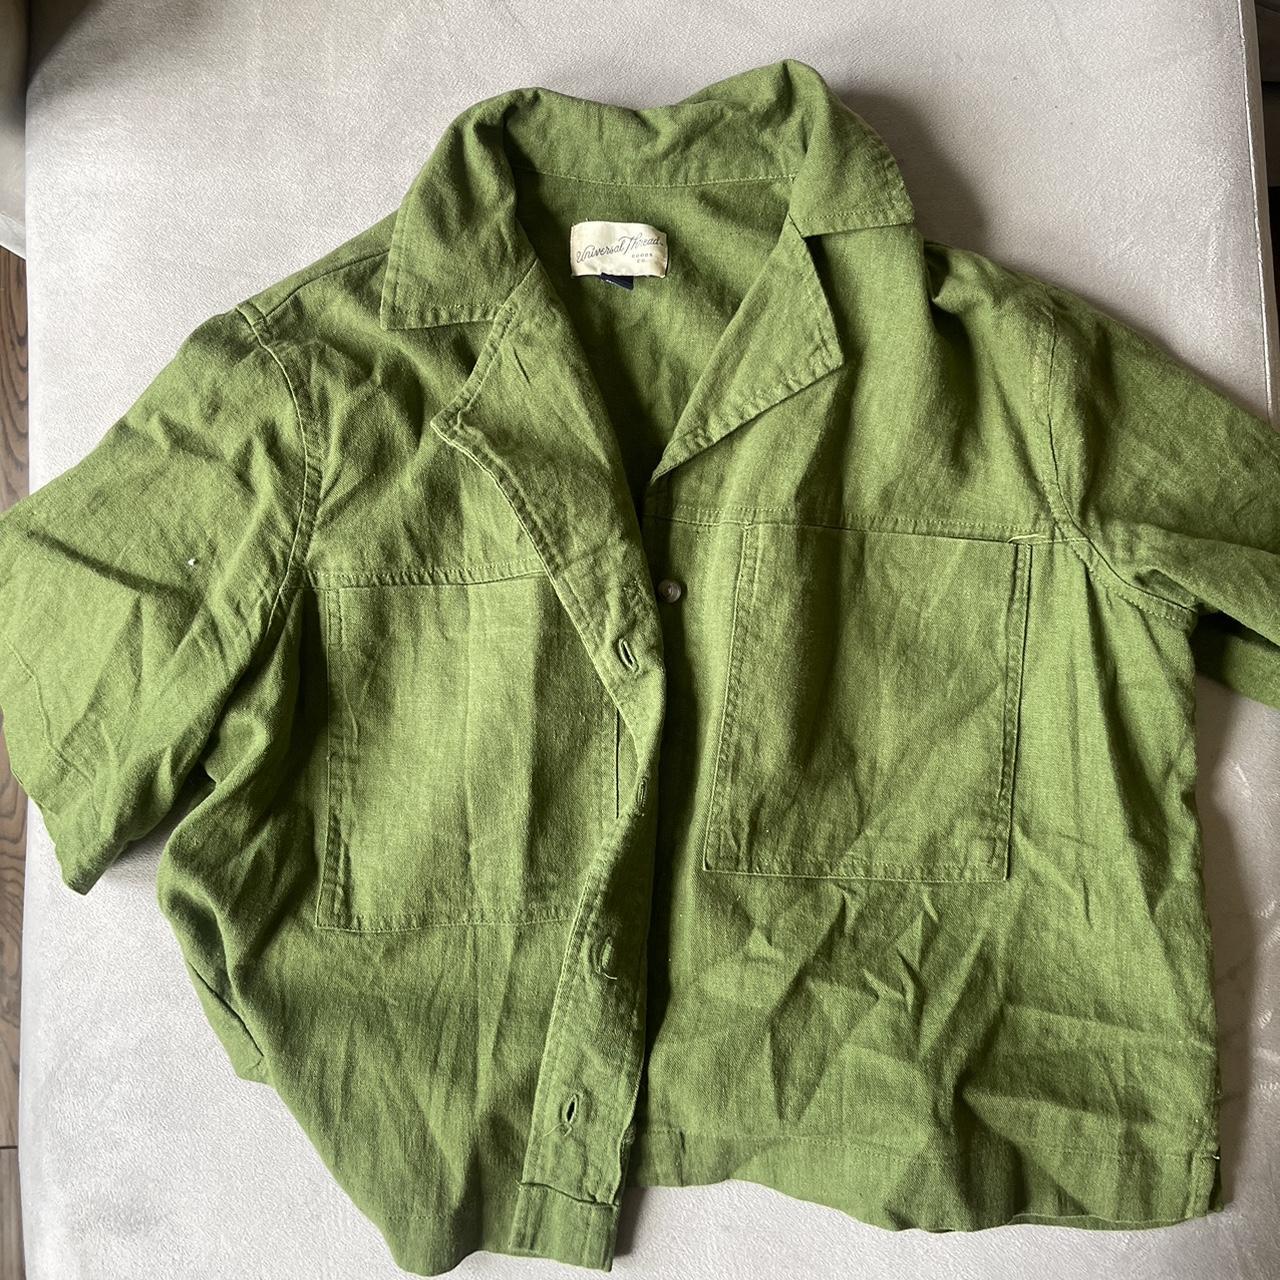 Target Women's Green Shirt